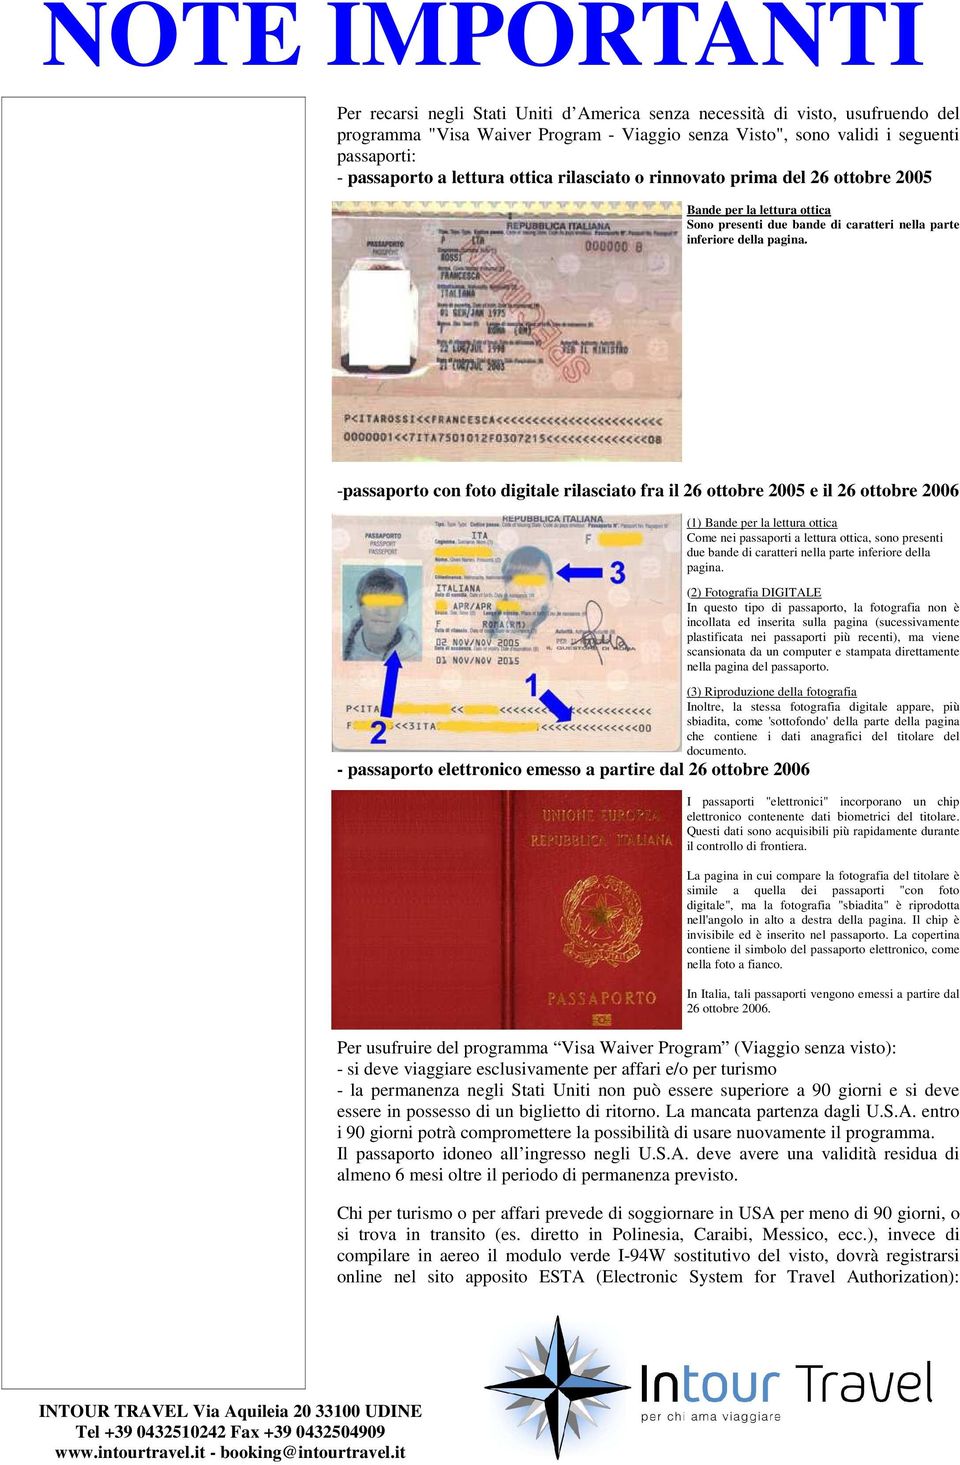 -passaporto con foto digitale rilasciato fra il 26 ottobre 2005 e il 26 ottobre 2006 (1) Bande per la lettura ottica Come nei passaporti a lettura ottica, sono presenti due bande di caratteri nella